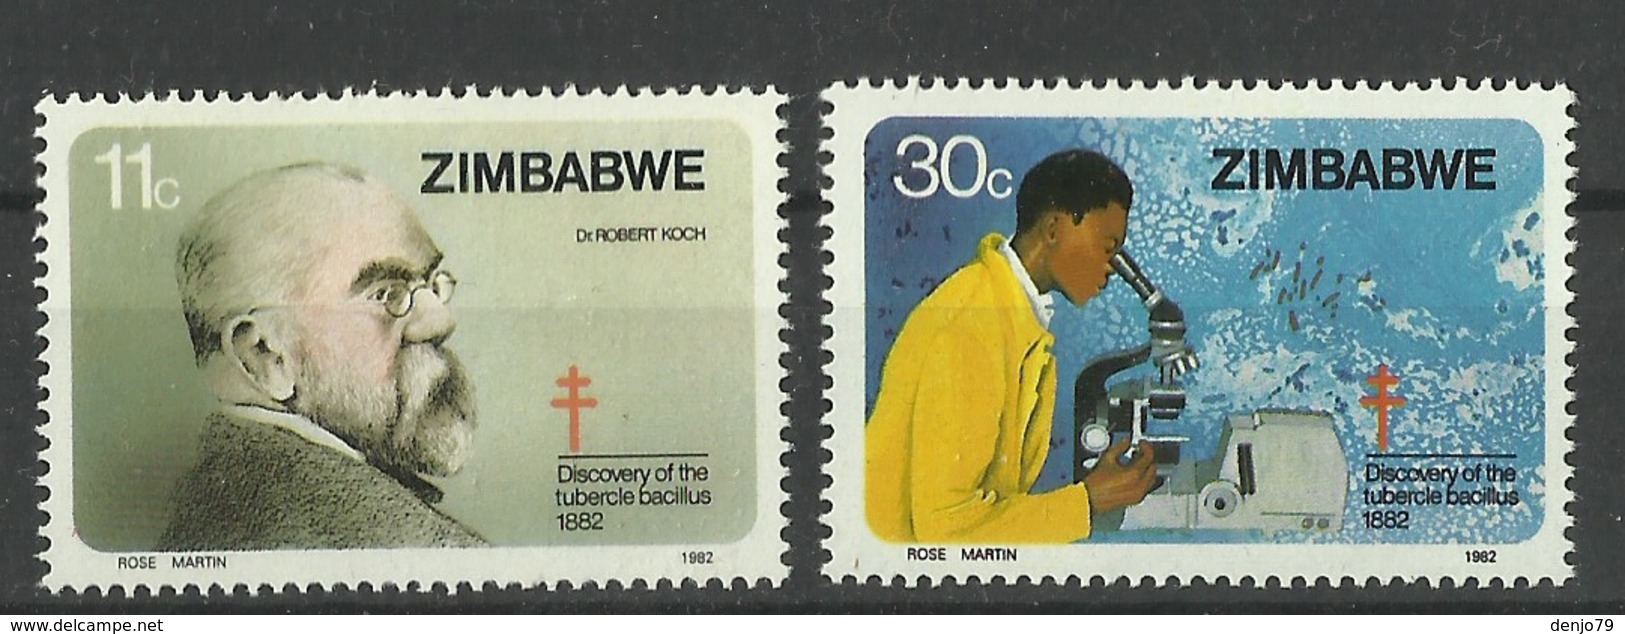 ZIMBABWE  1982 ROBERT KOCH,DISCOVERY OF TUBERCLE BACILLUS SET MNH - Zimbabwe (1980-...)